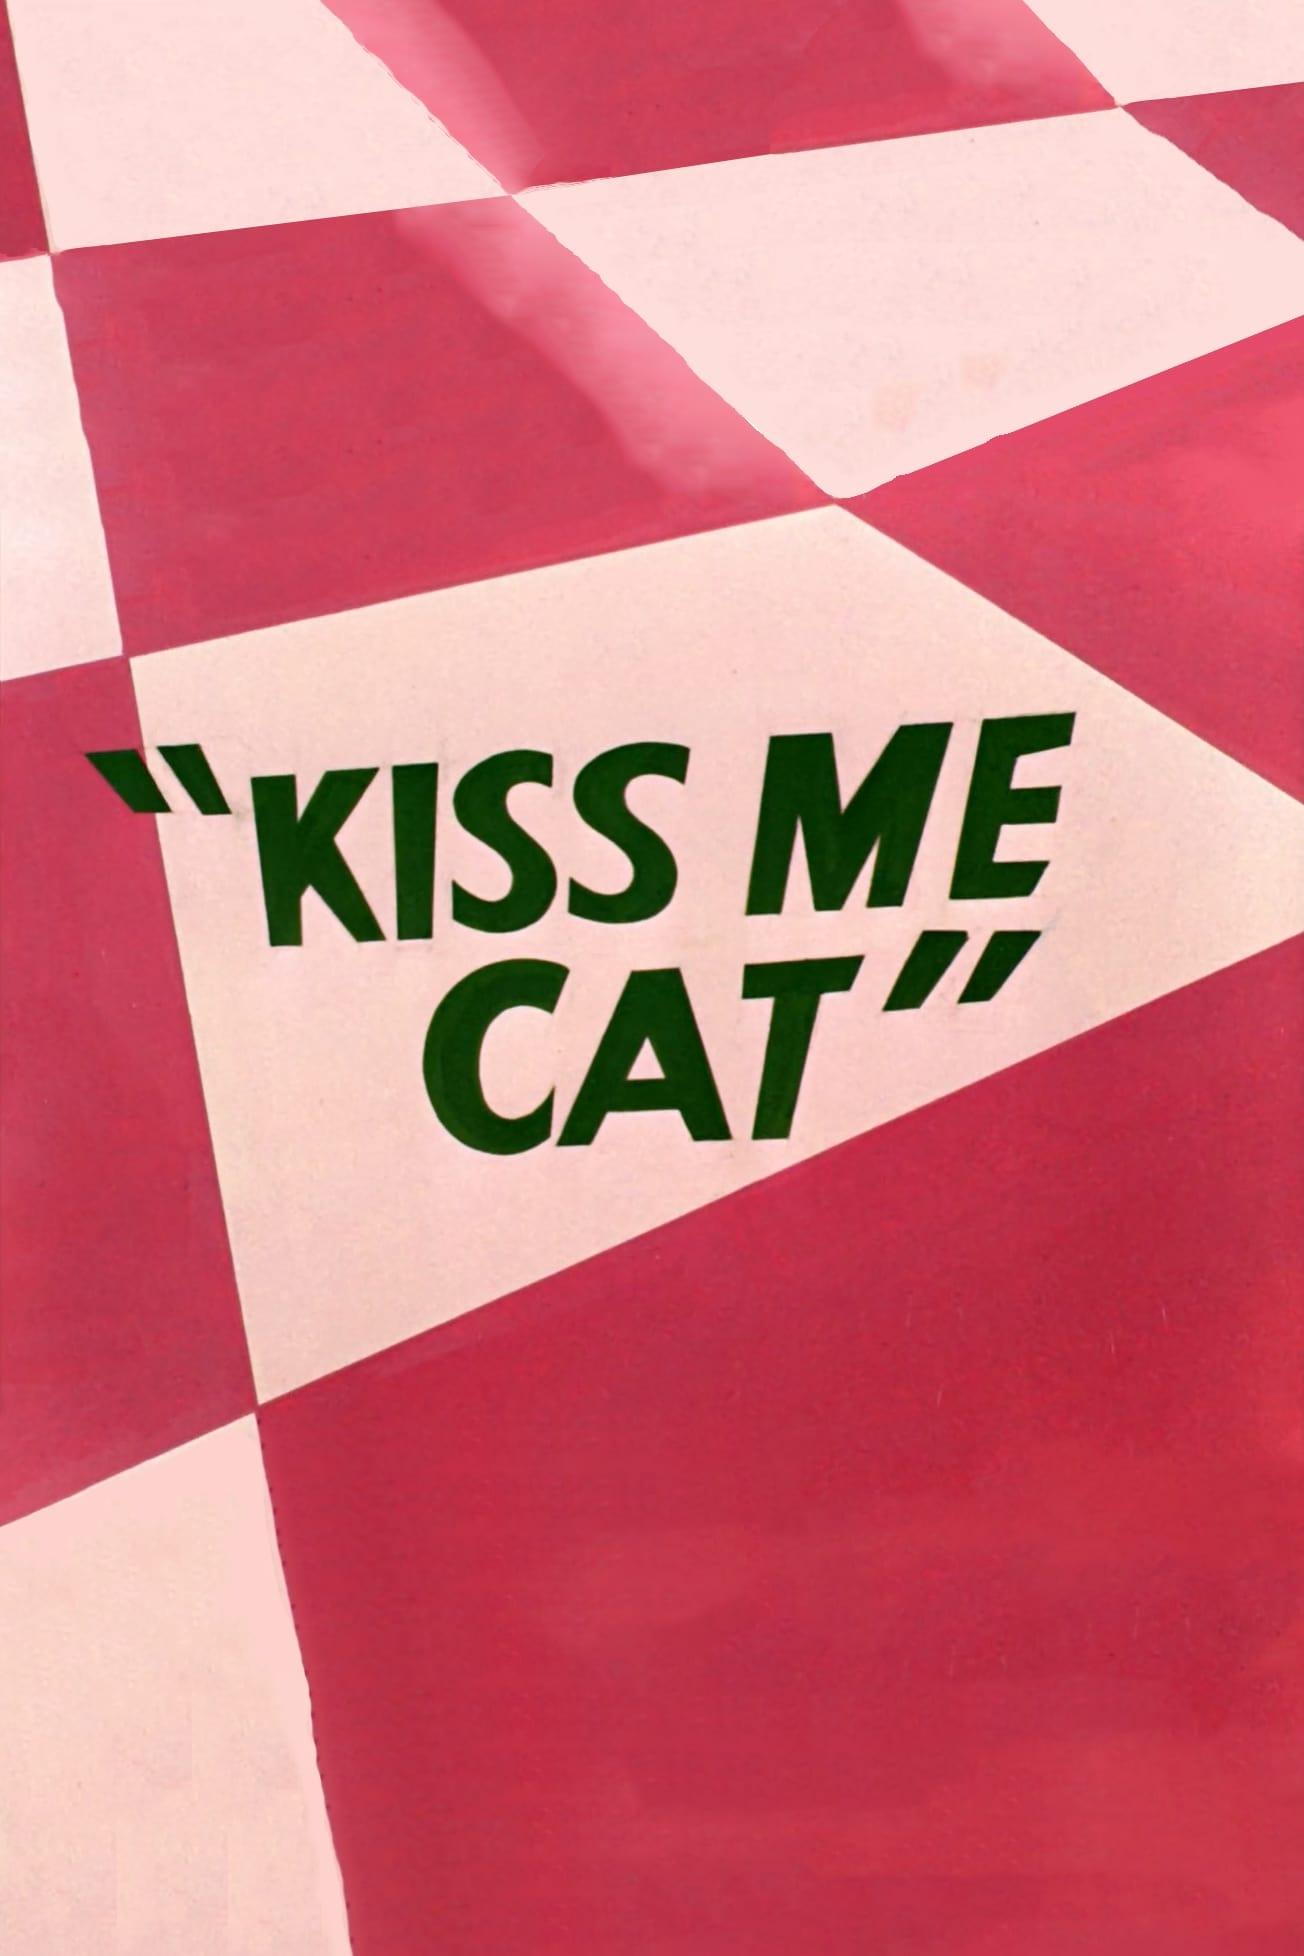 Kiss Me Cat poster